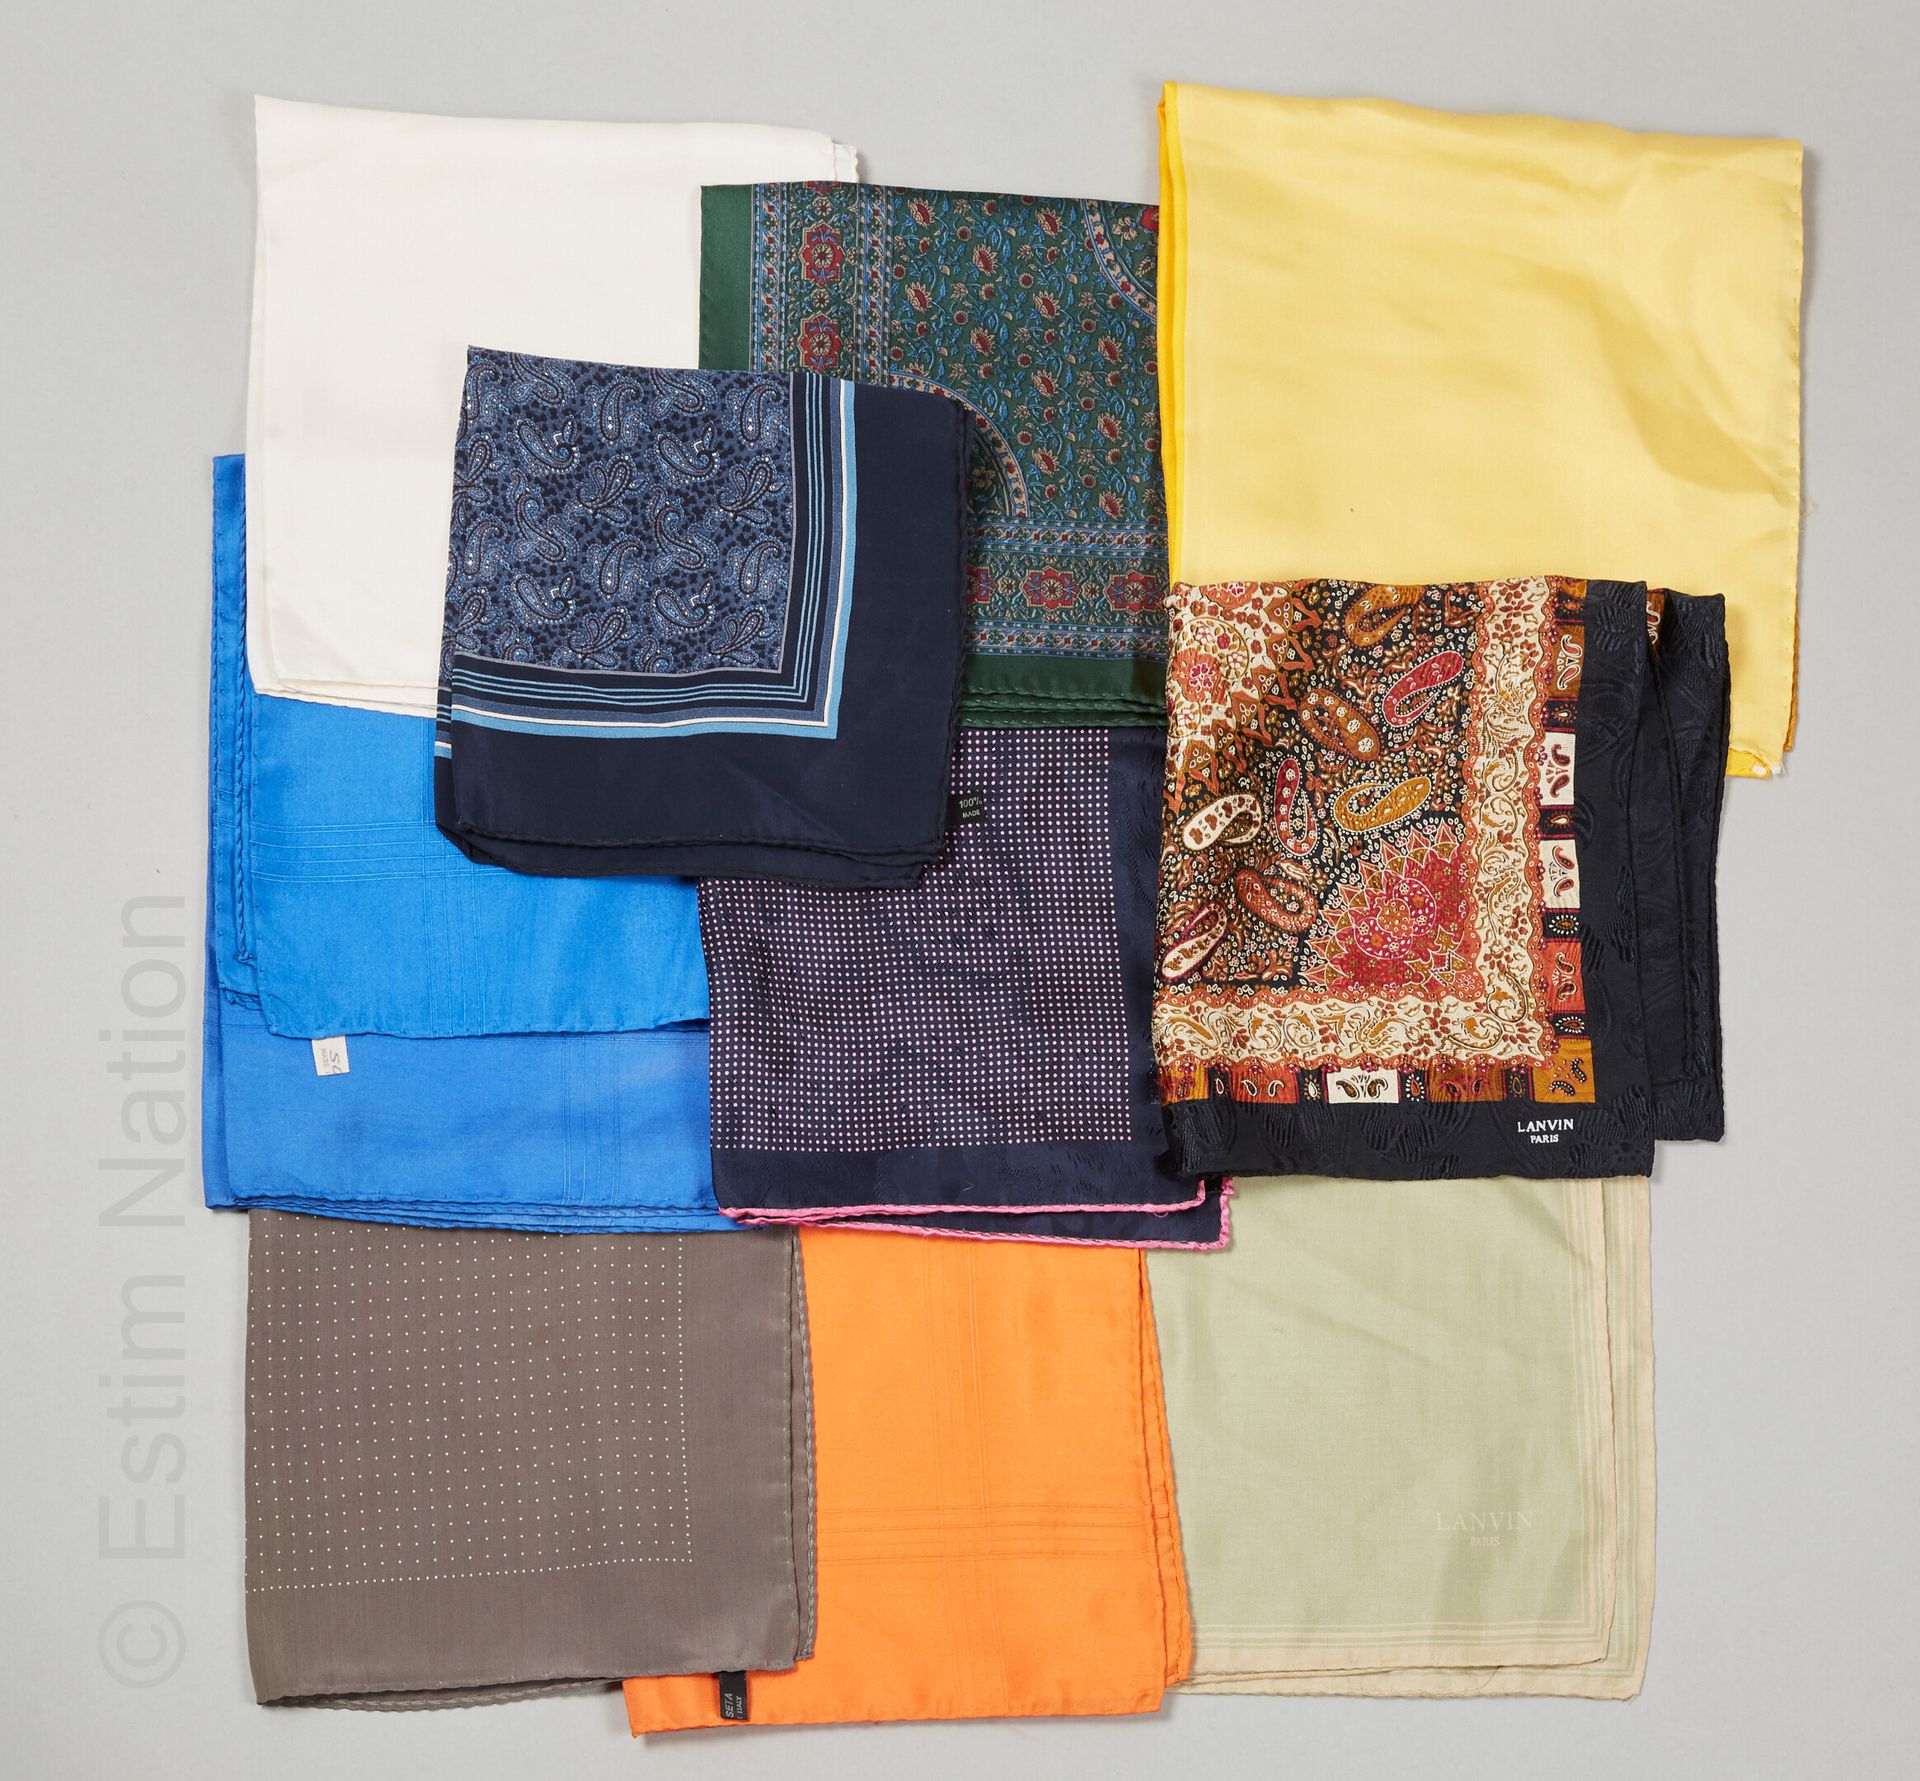 LANVIN 十个口袋和口袋里有各种印刷的丝绸（不保证状况）。